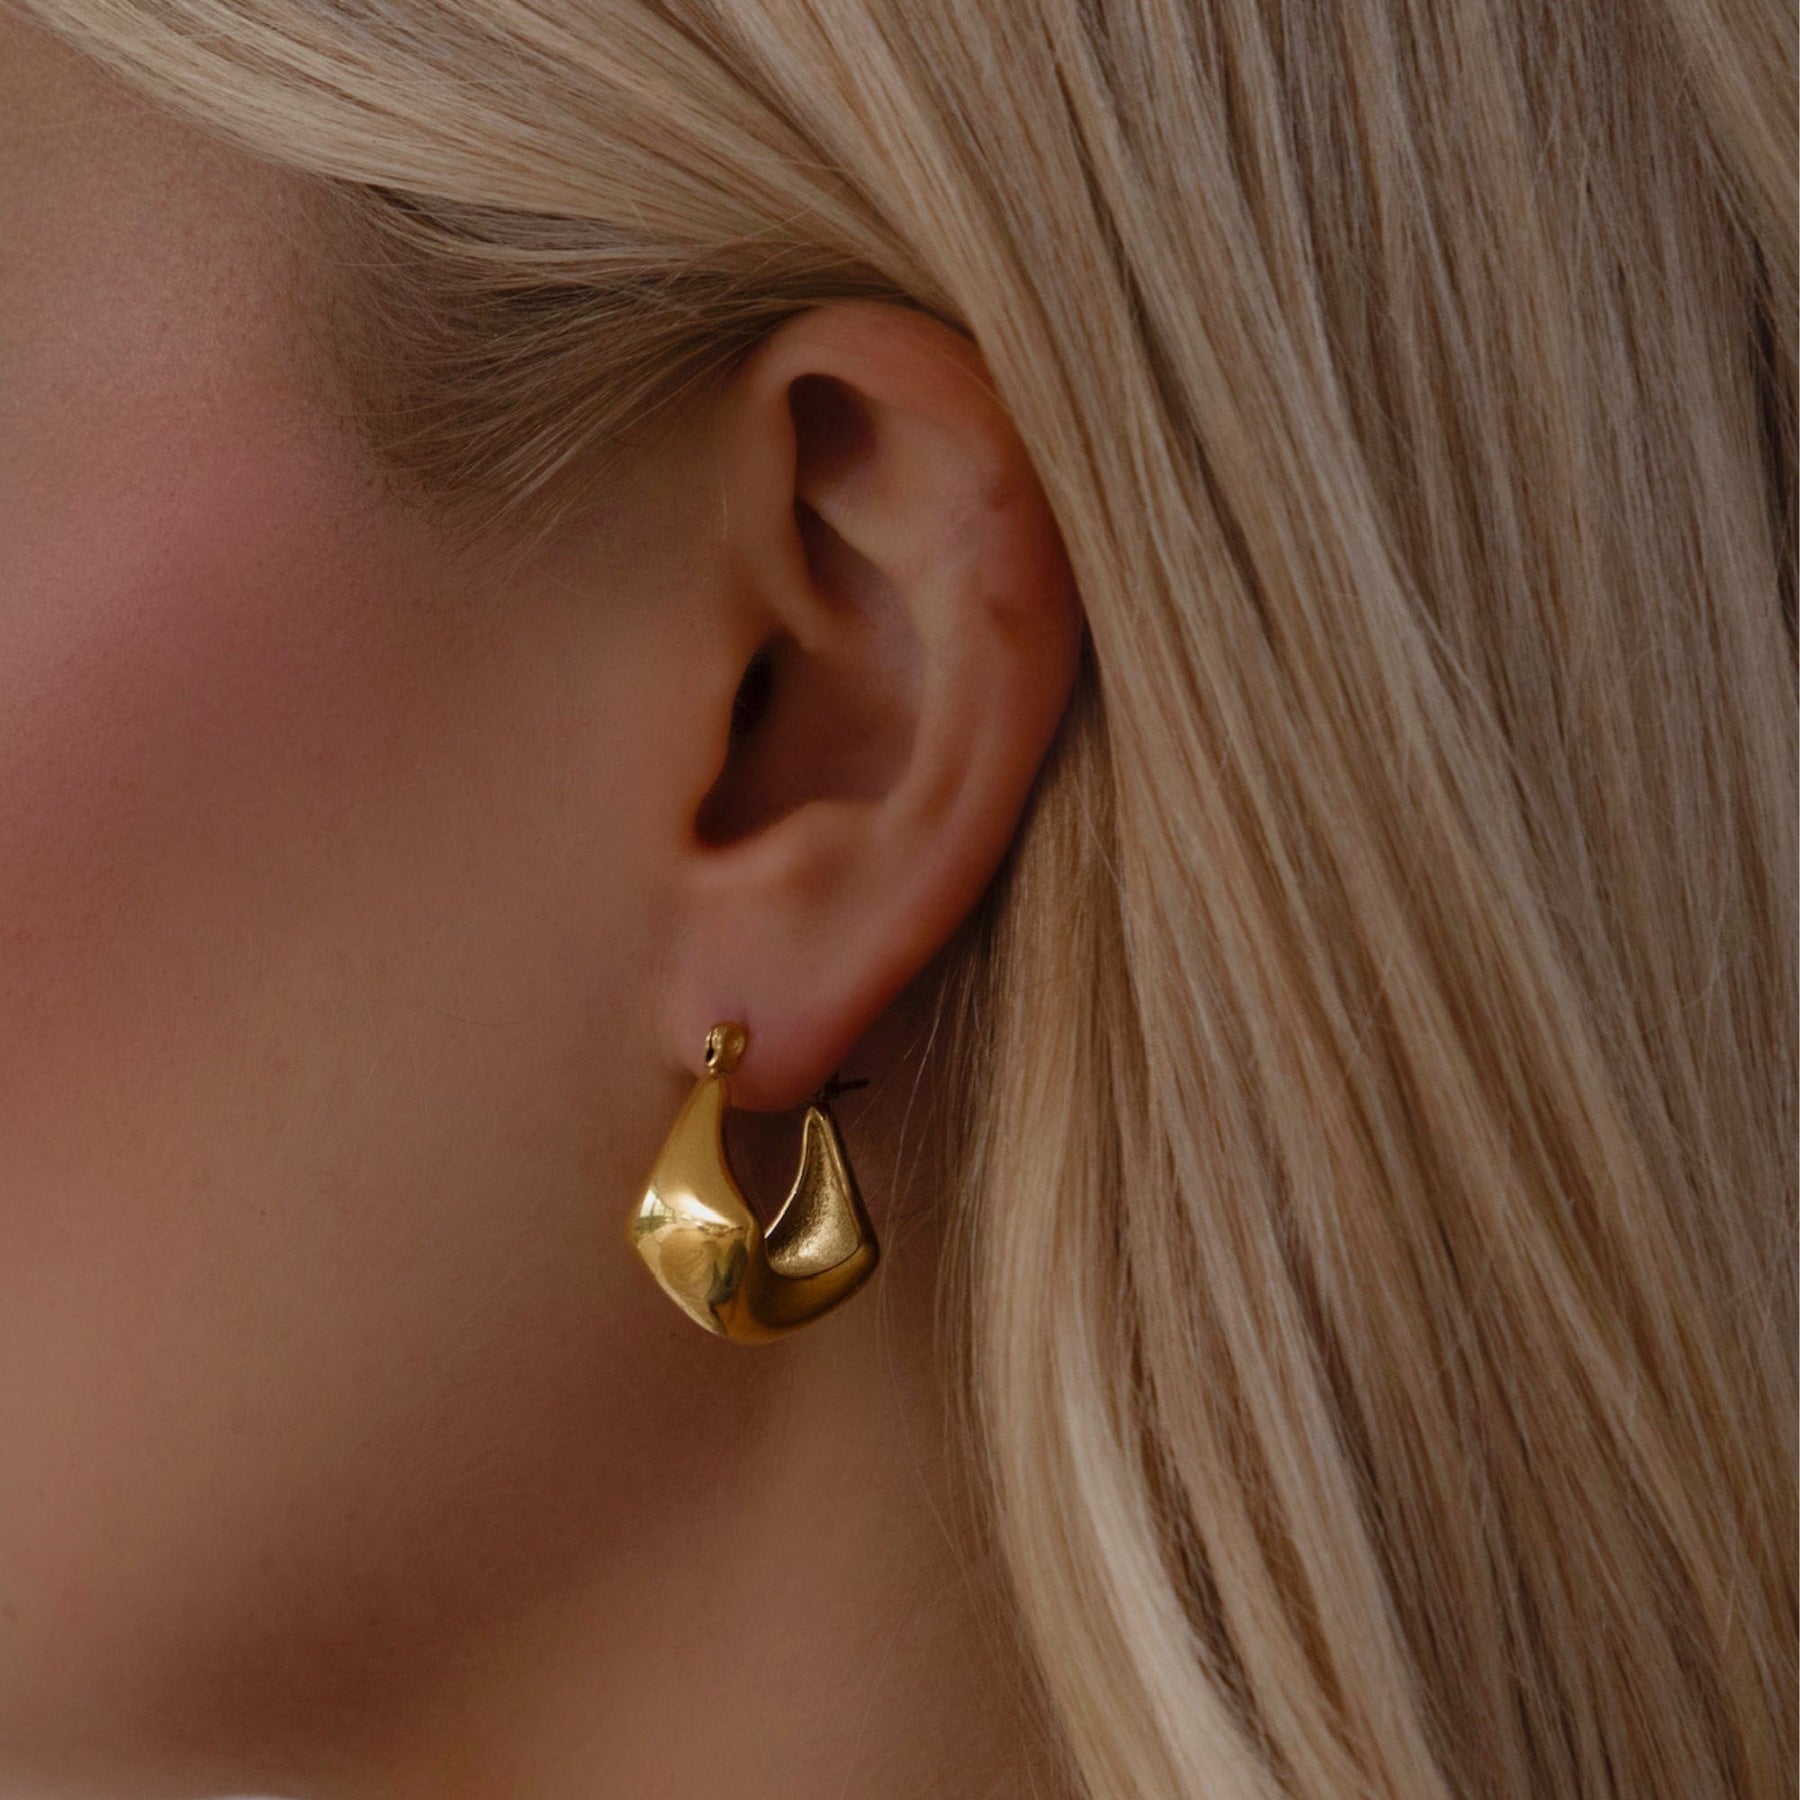 BohoMoon Stainless Steel Melissa Hoop Earrings Gold